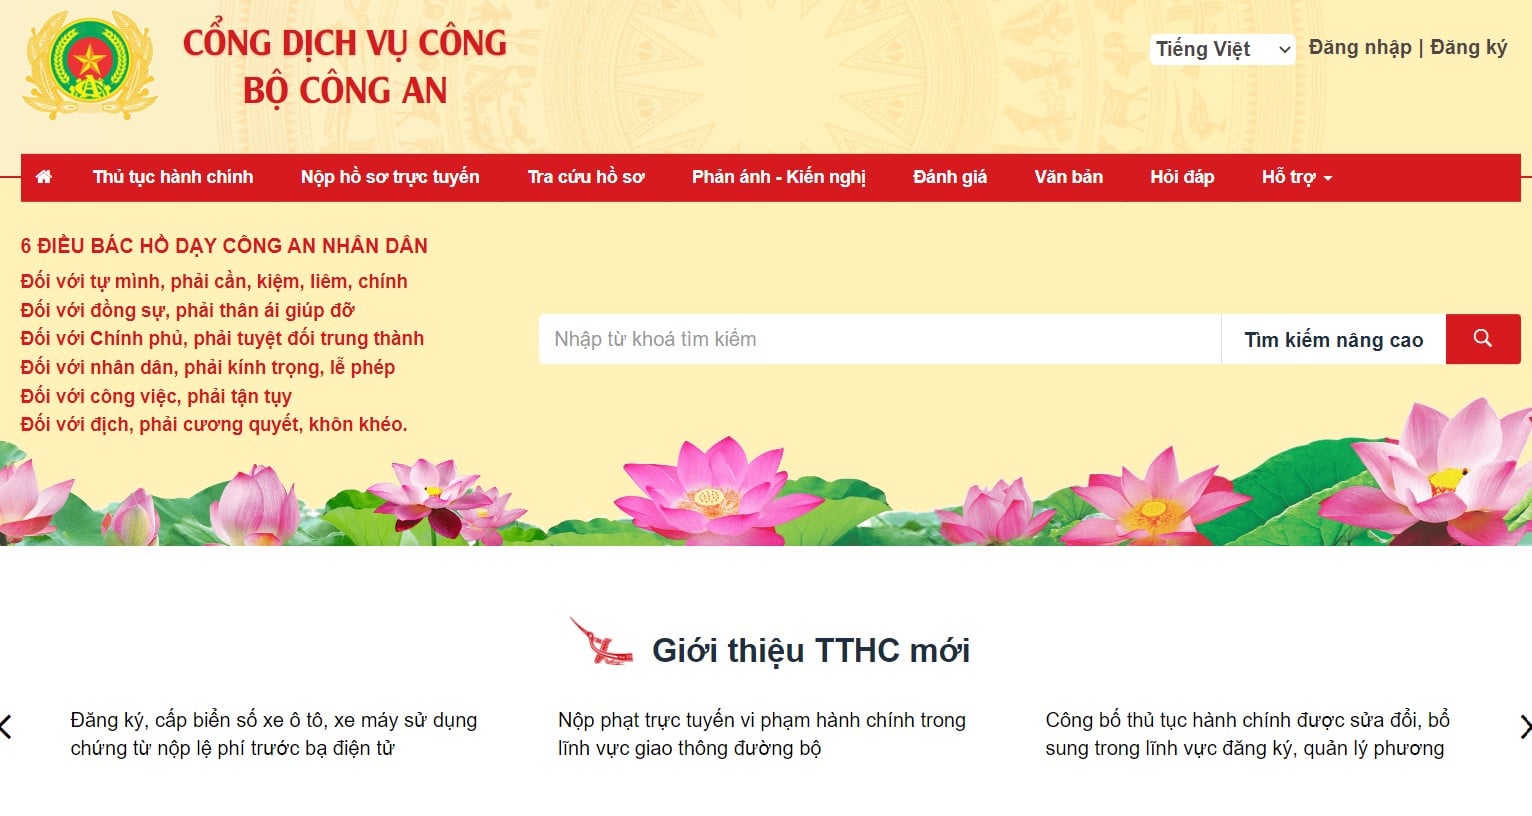 Thủ tục đăng ký làm hộ chiếu (Passport) online tại Bình Định